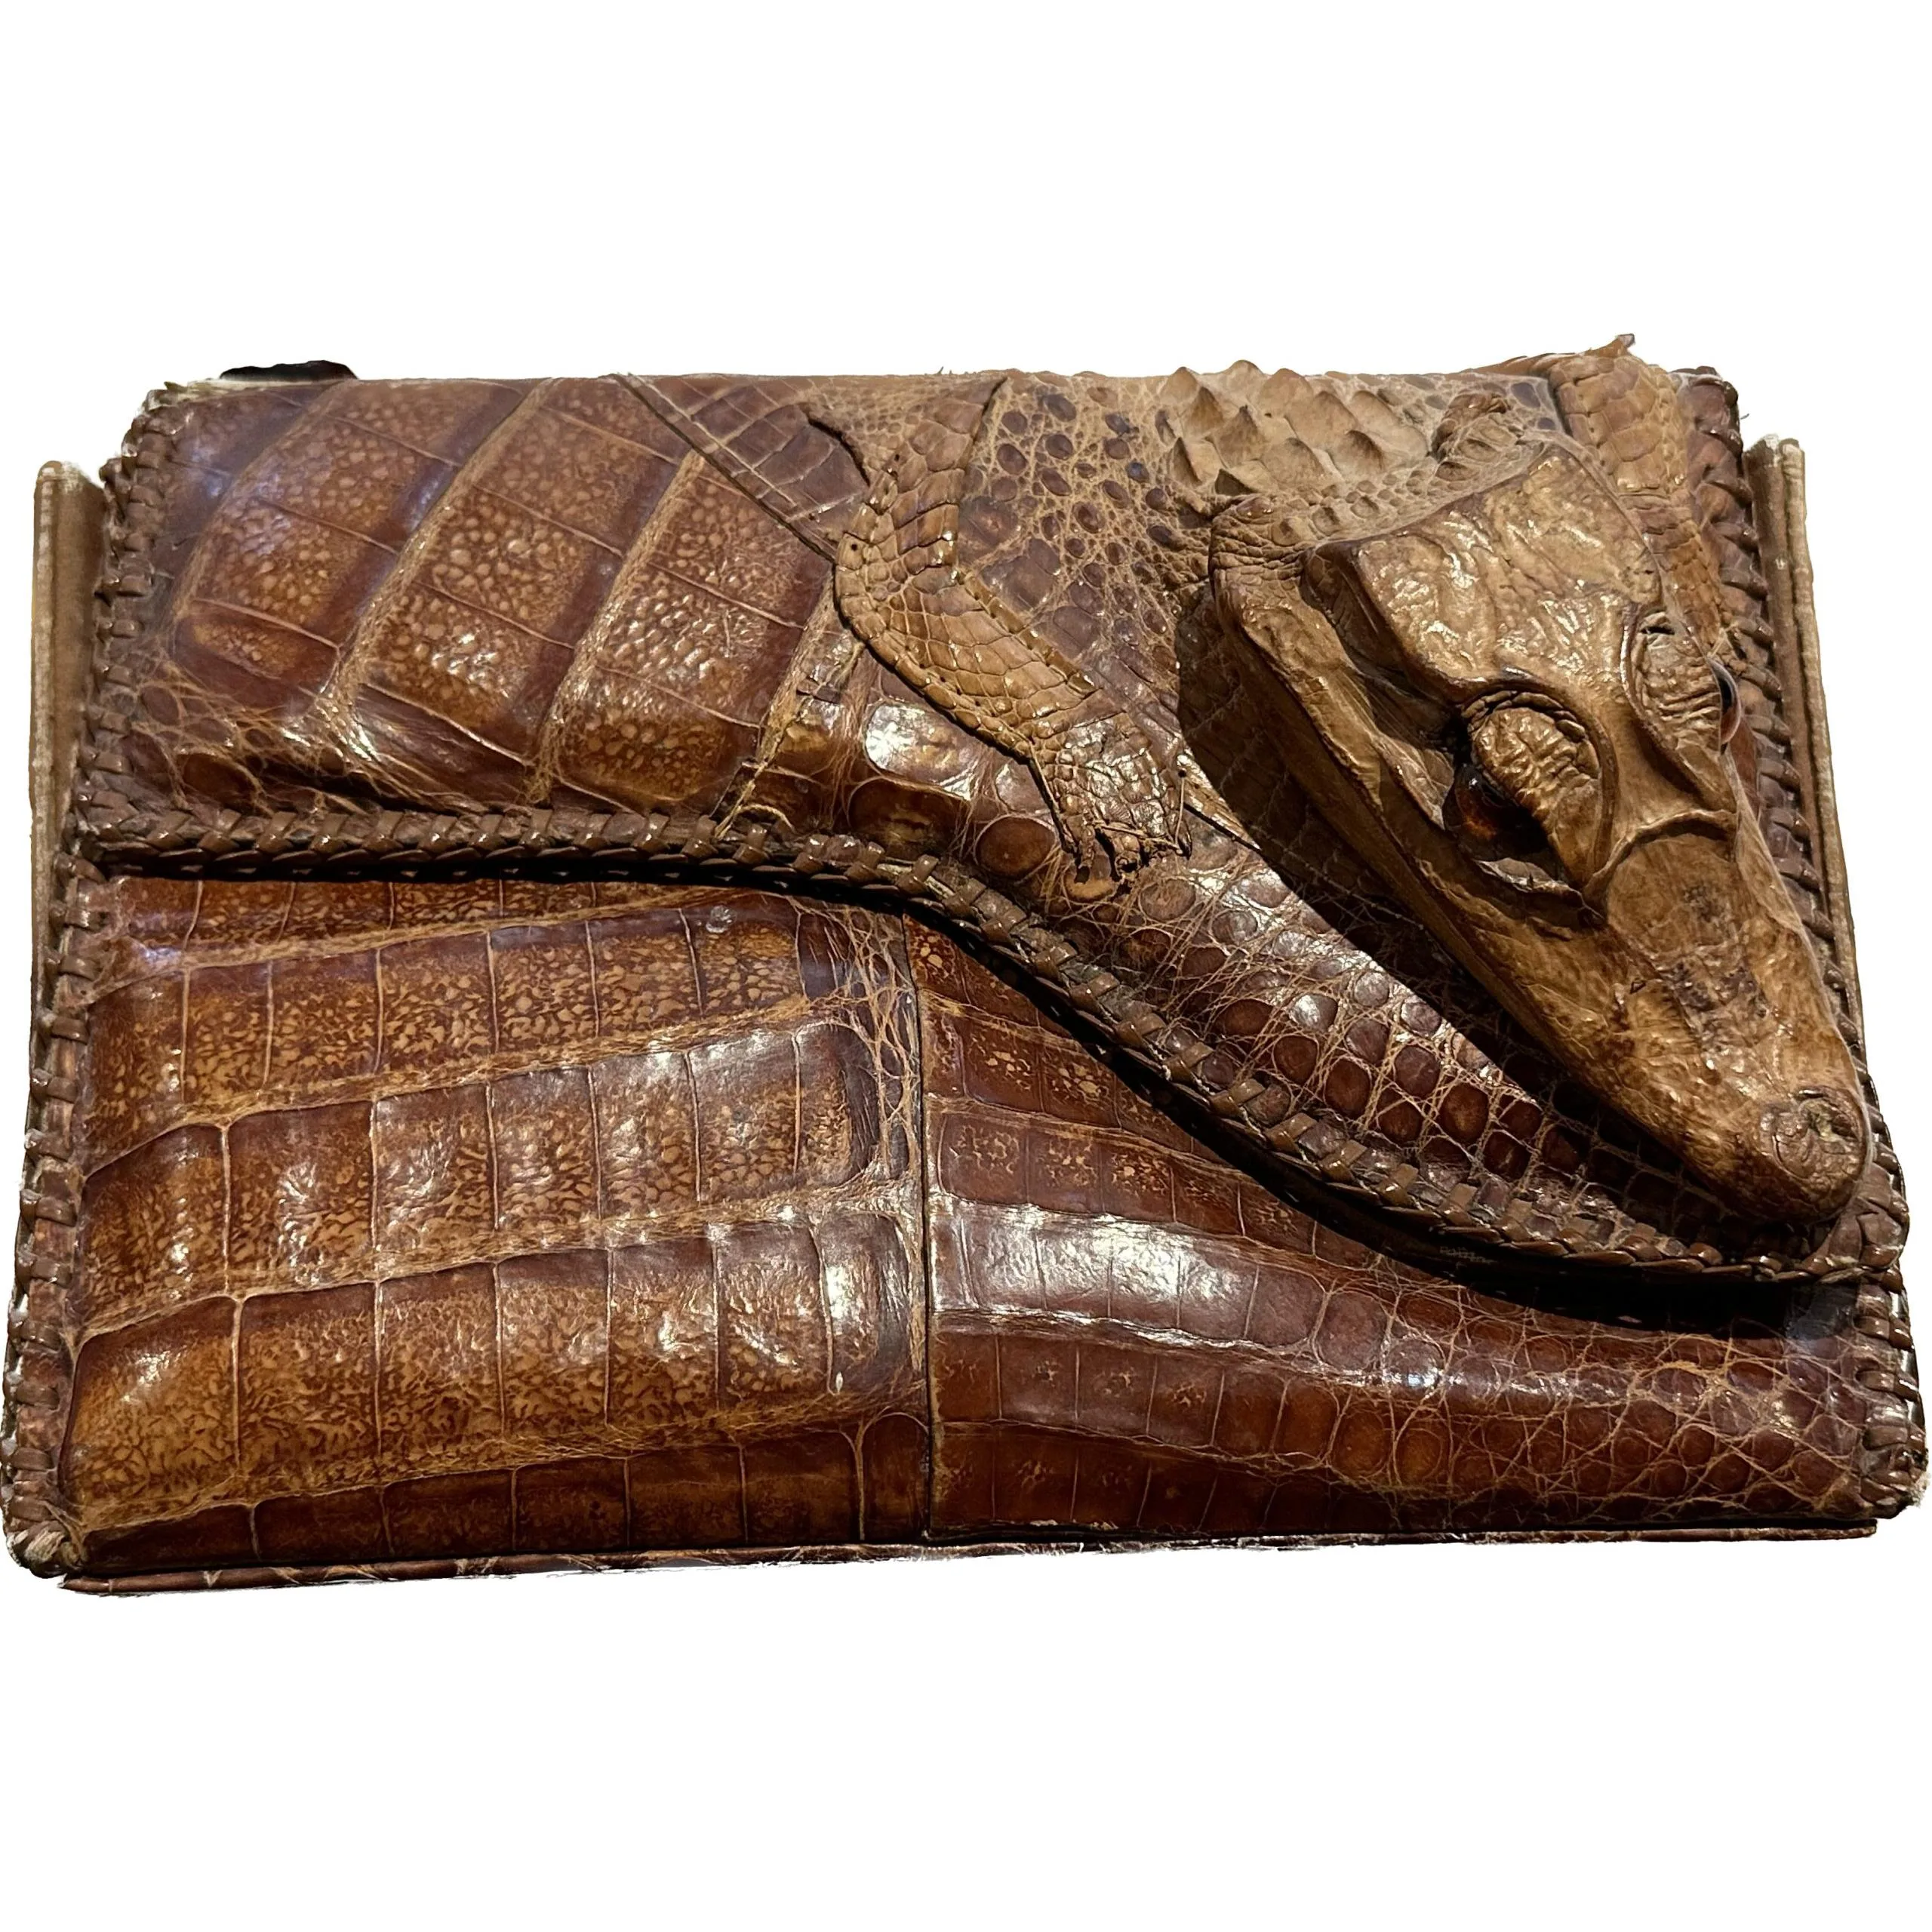 EL10-1) Genuine vintage Caiman crocodile Leather Clutch Handbag SKIN Hide  PURSE | eBay